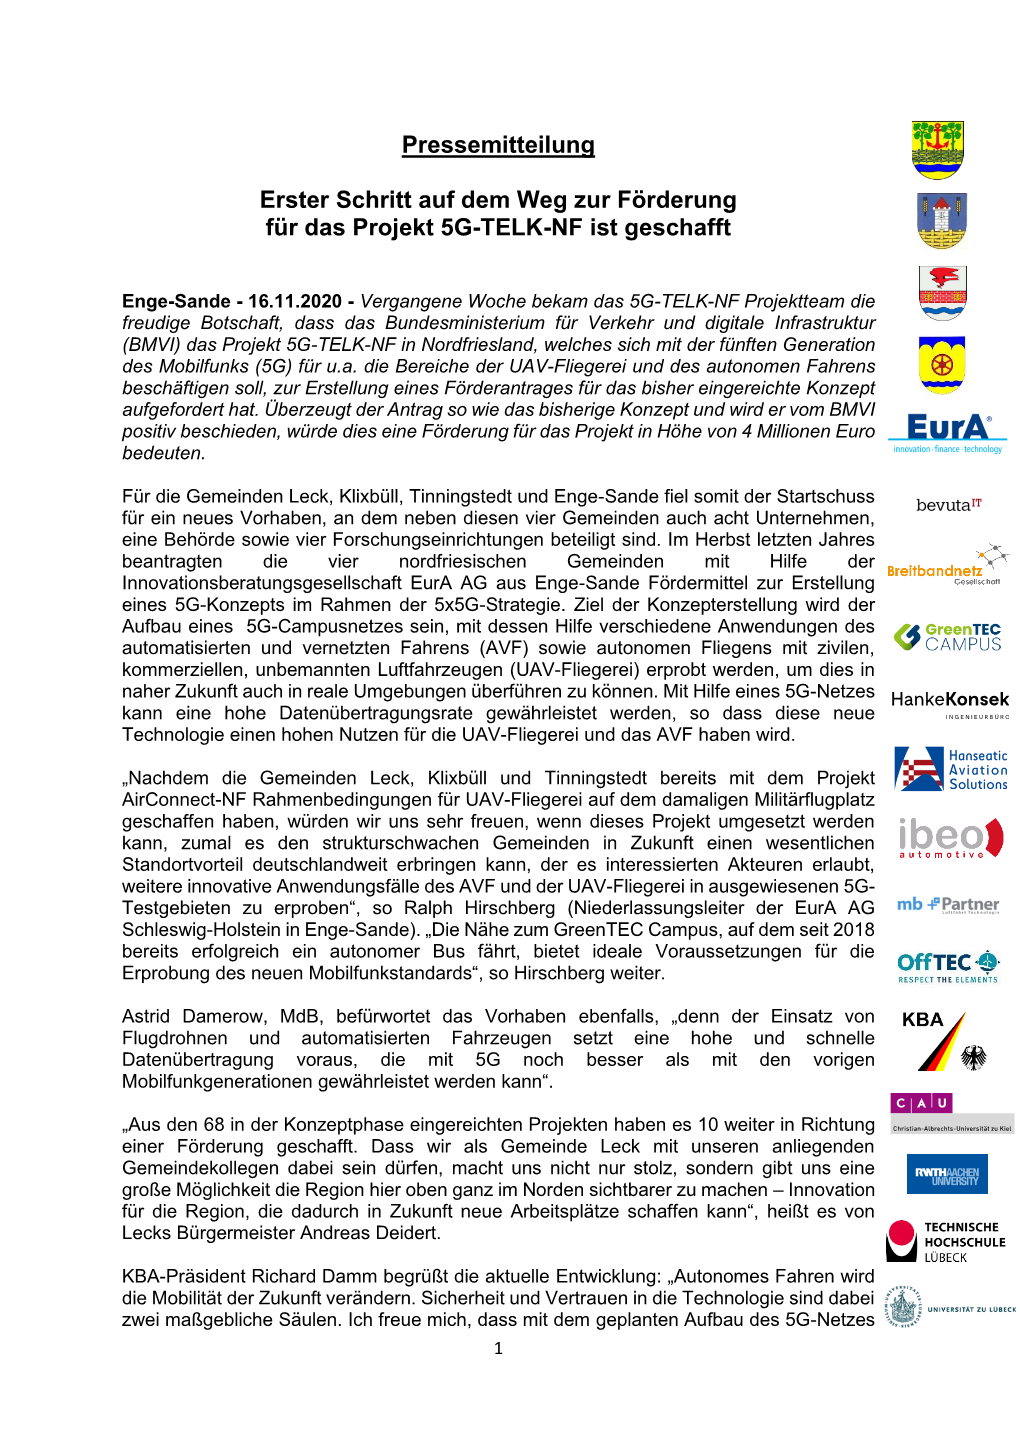 Pressemitteilung Erster Schritt Auf Dem Weg Zur Förderung Für Das Projekt 5G-TELK-NF Ist Geschafft